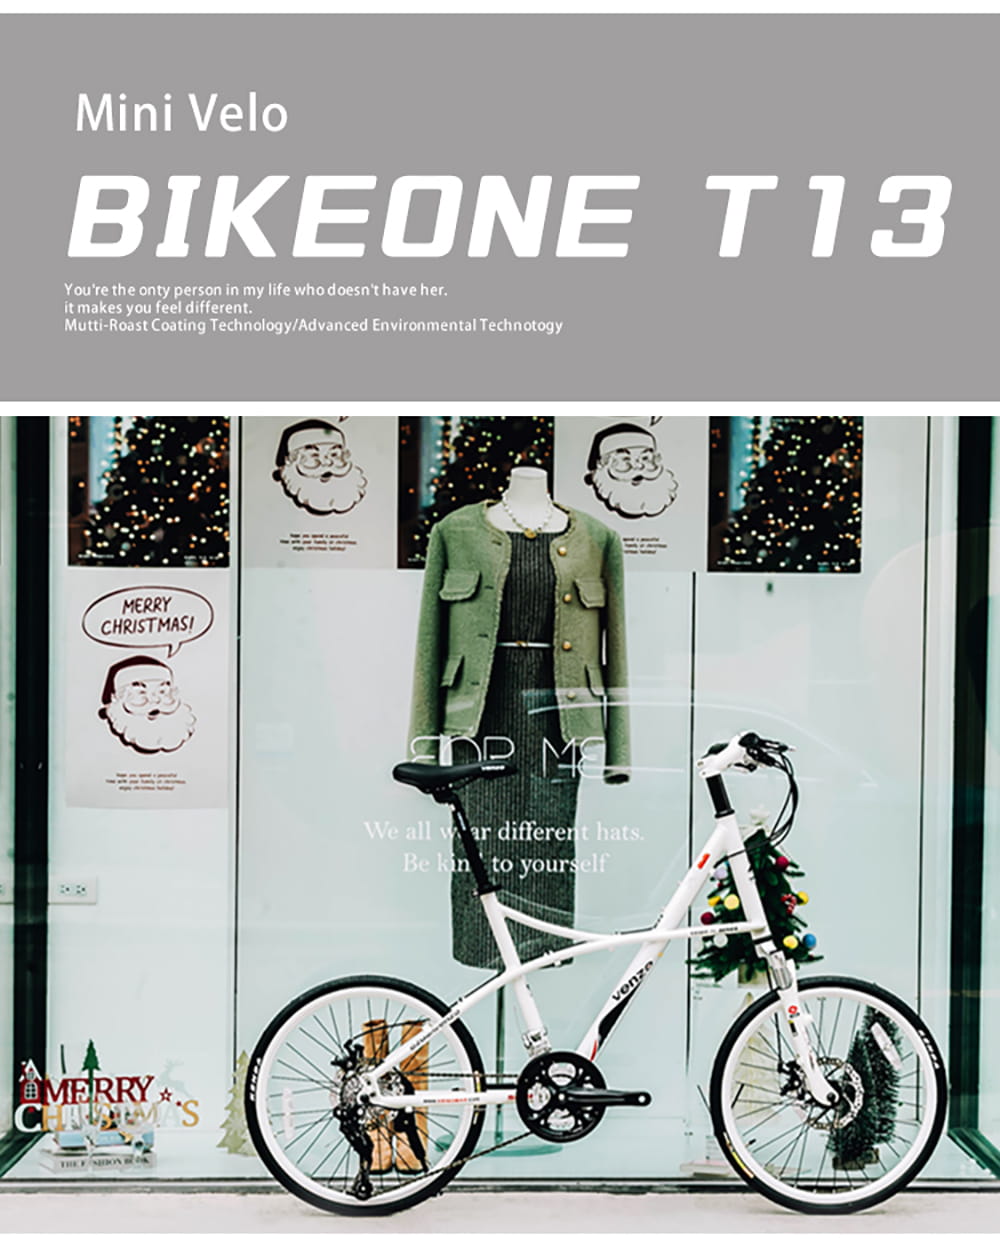 BIKEONE T13 SP SRAM變速27段鋁合金越野避震碟煞小徑車融合登山車的OFROAD動力 12